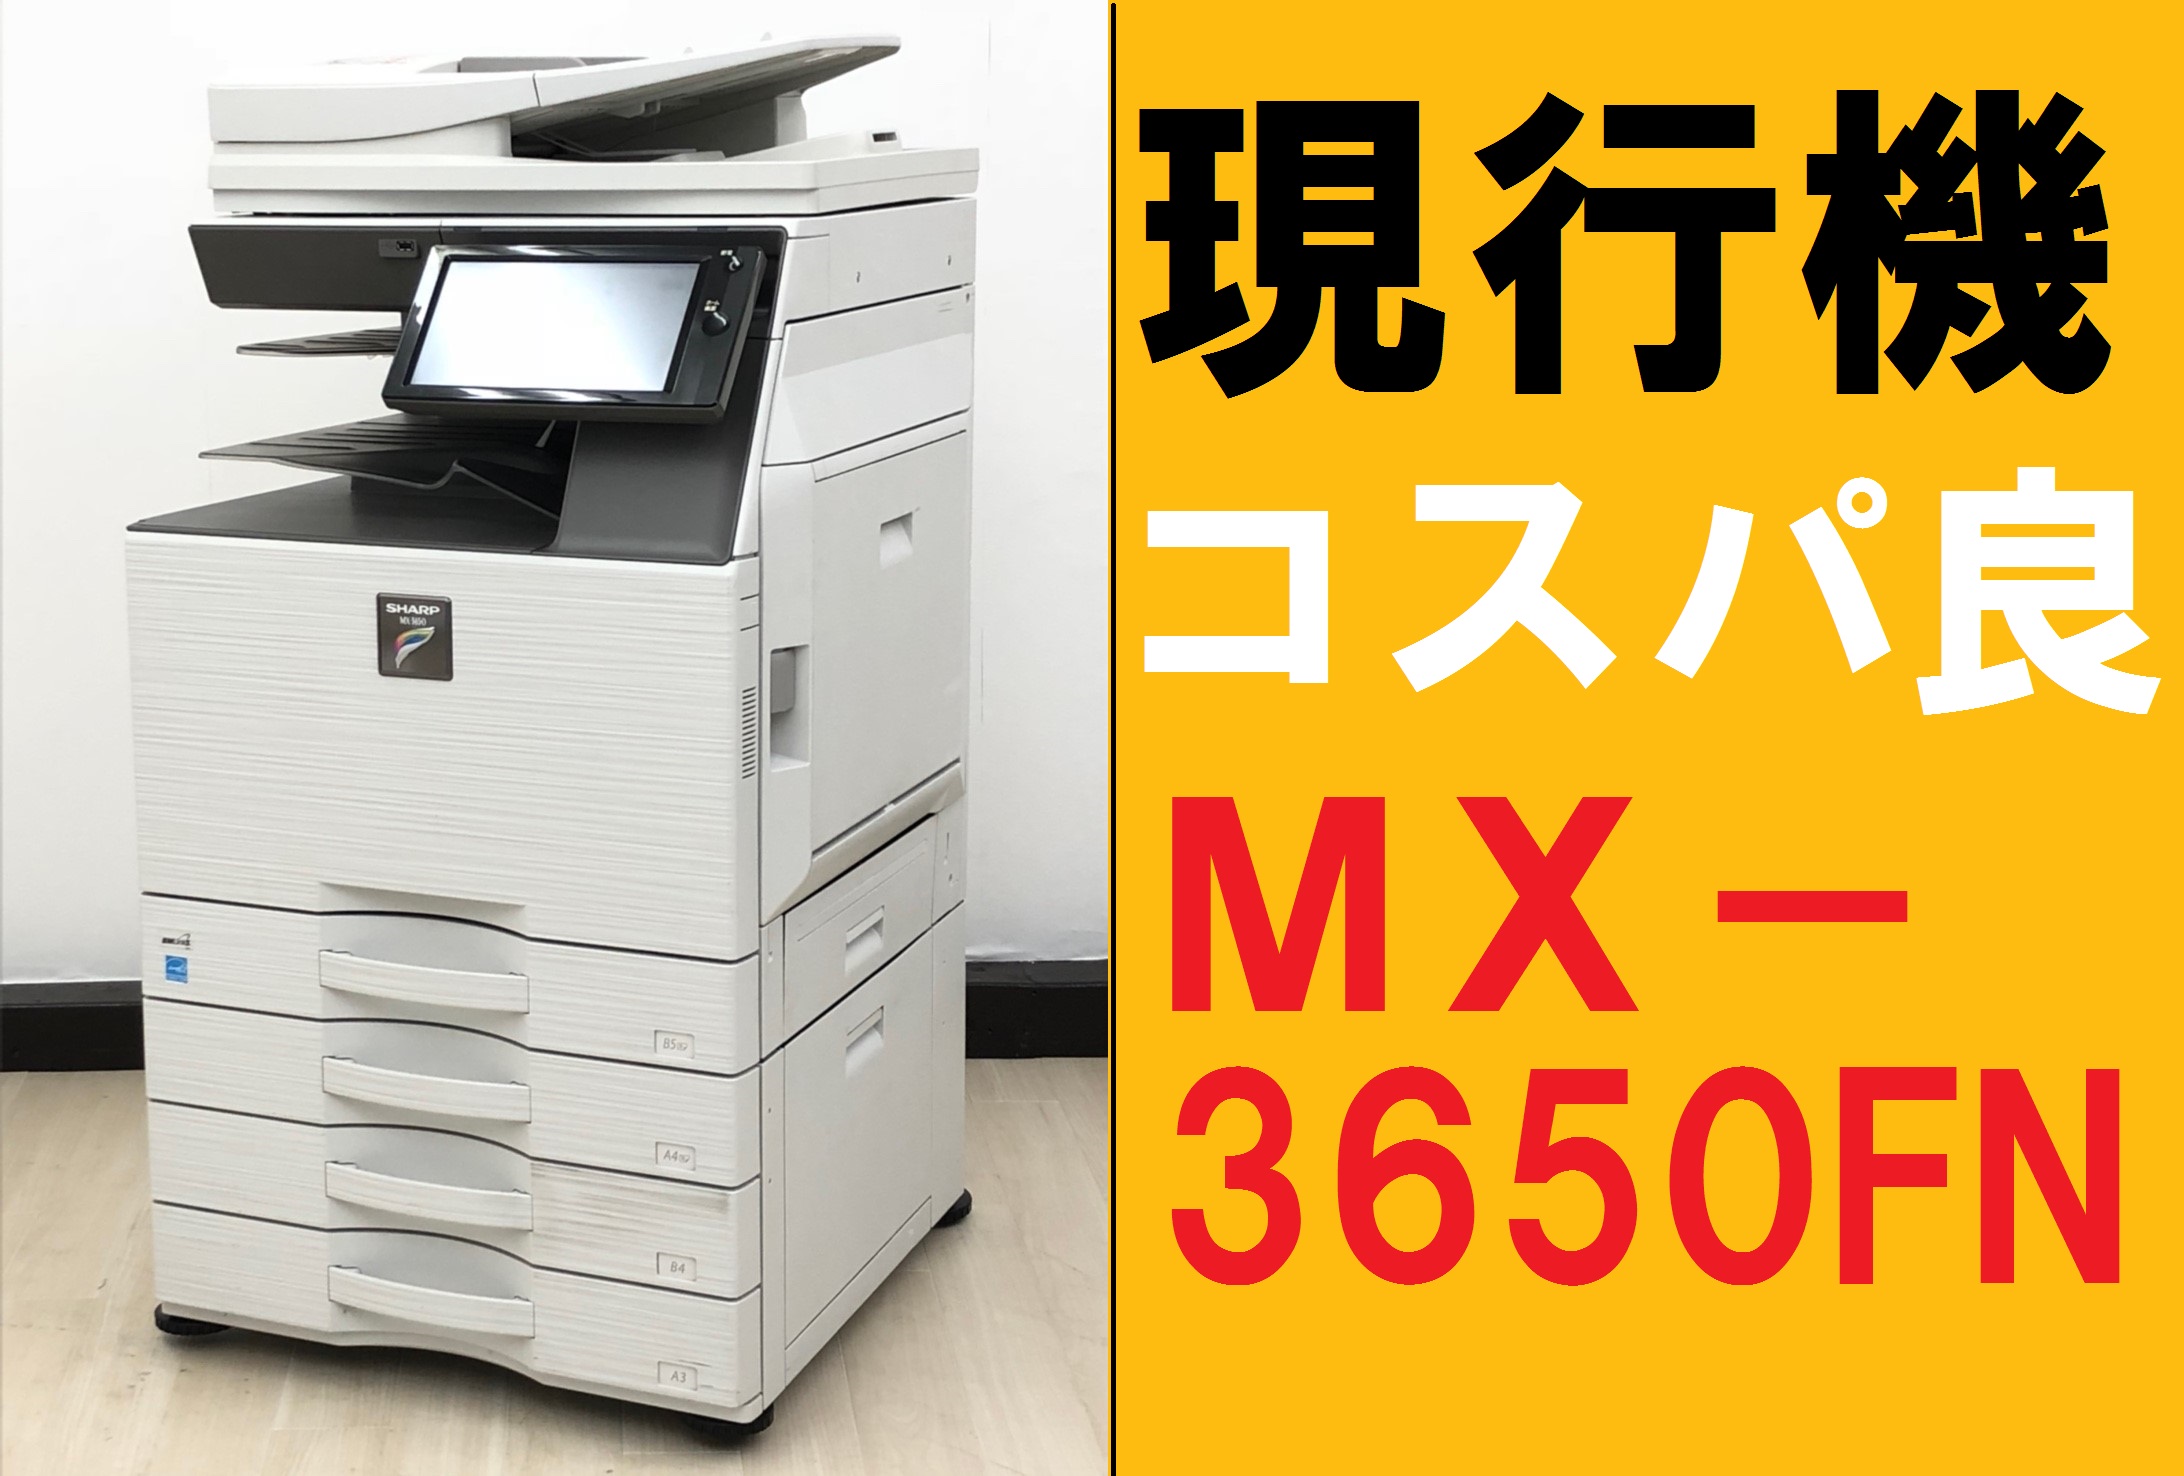 【中古】MXシリーズ MX3650FN シャープ/SHARP カラー複合機(コピー機) 231806